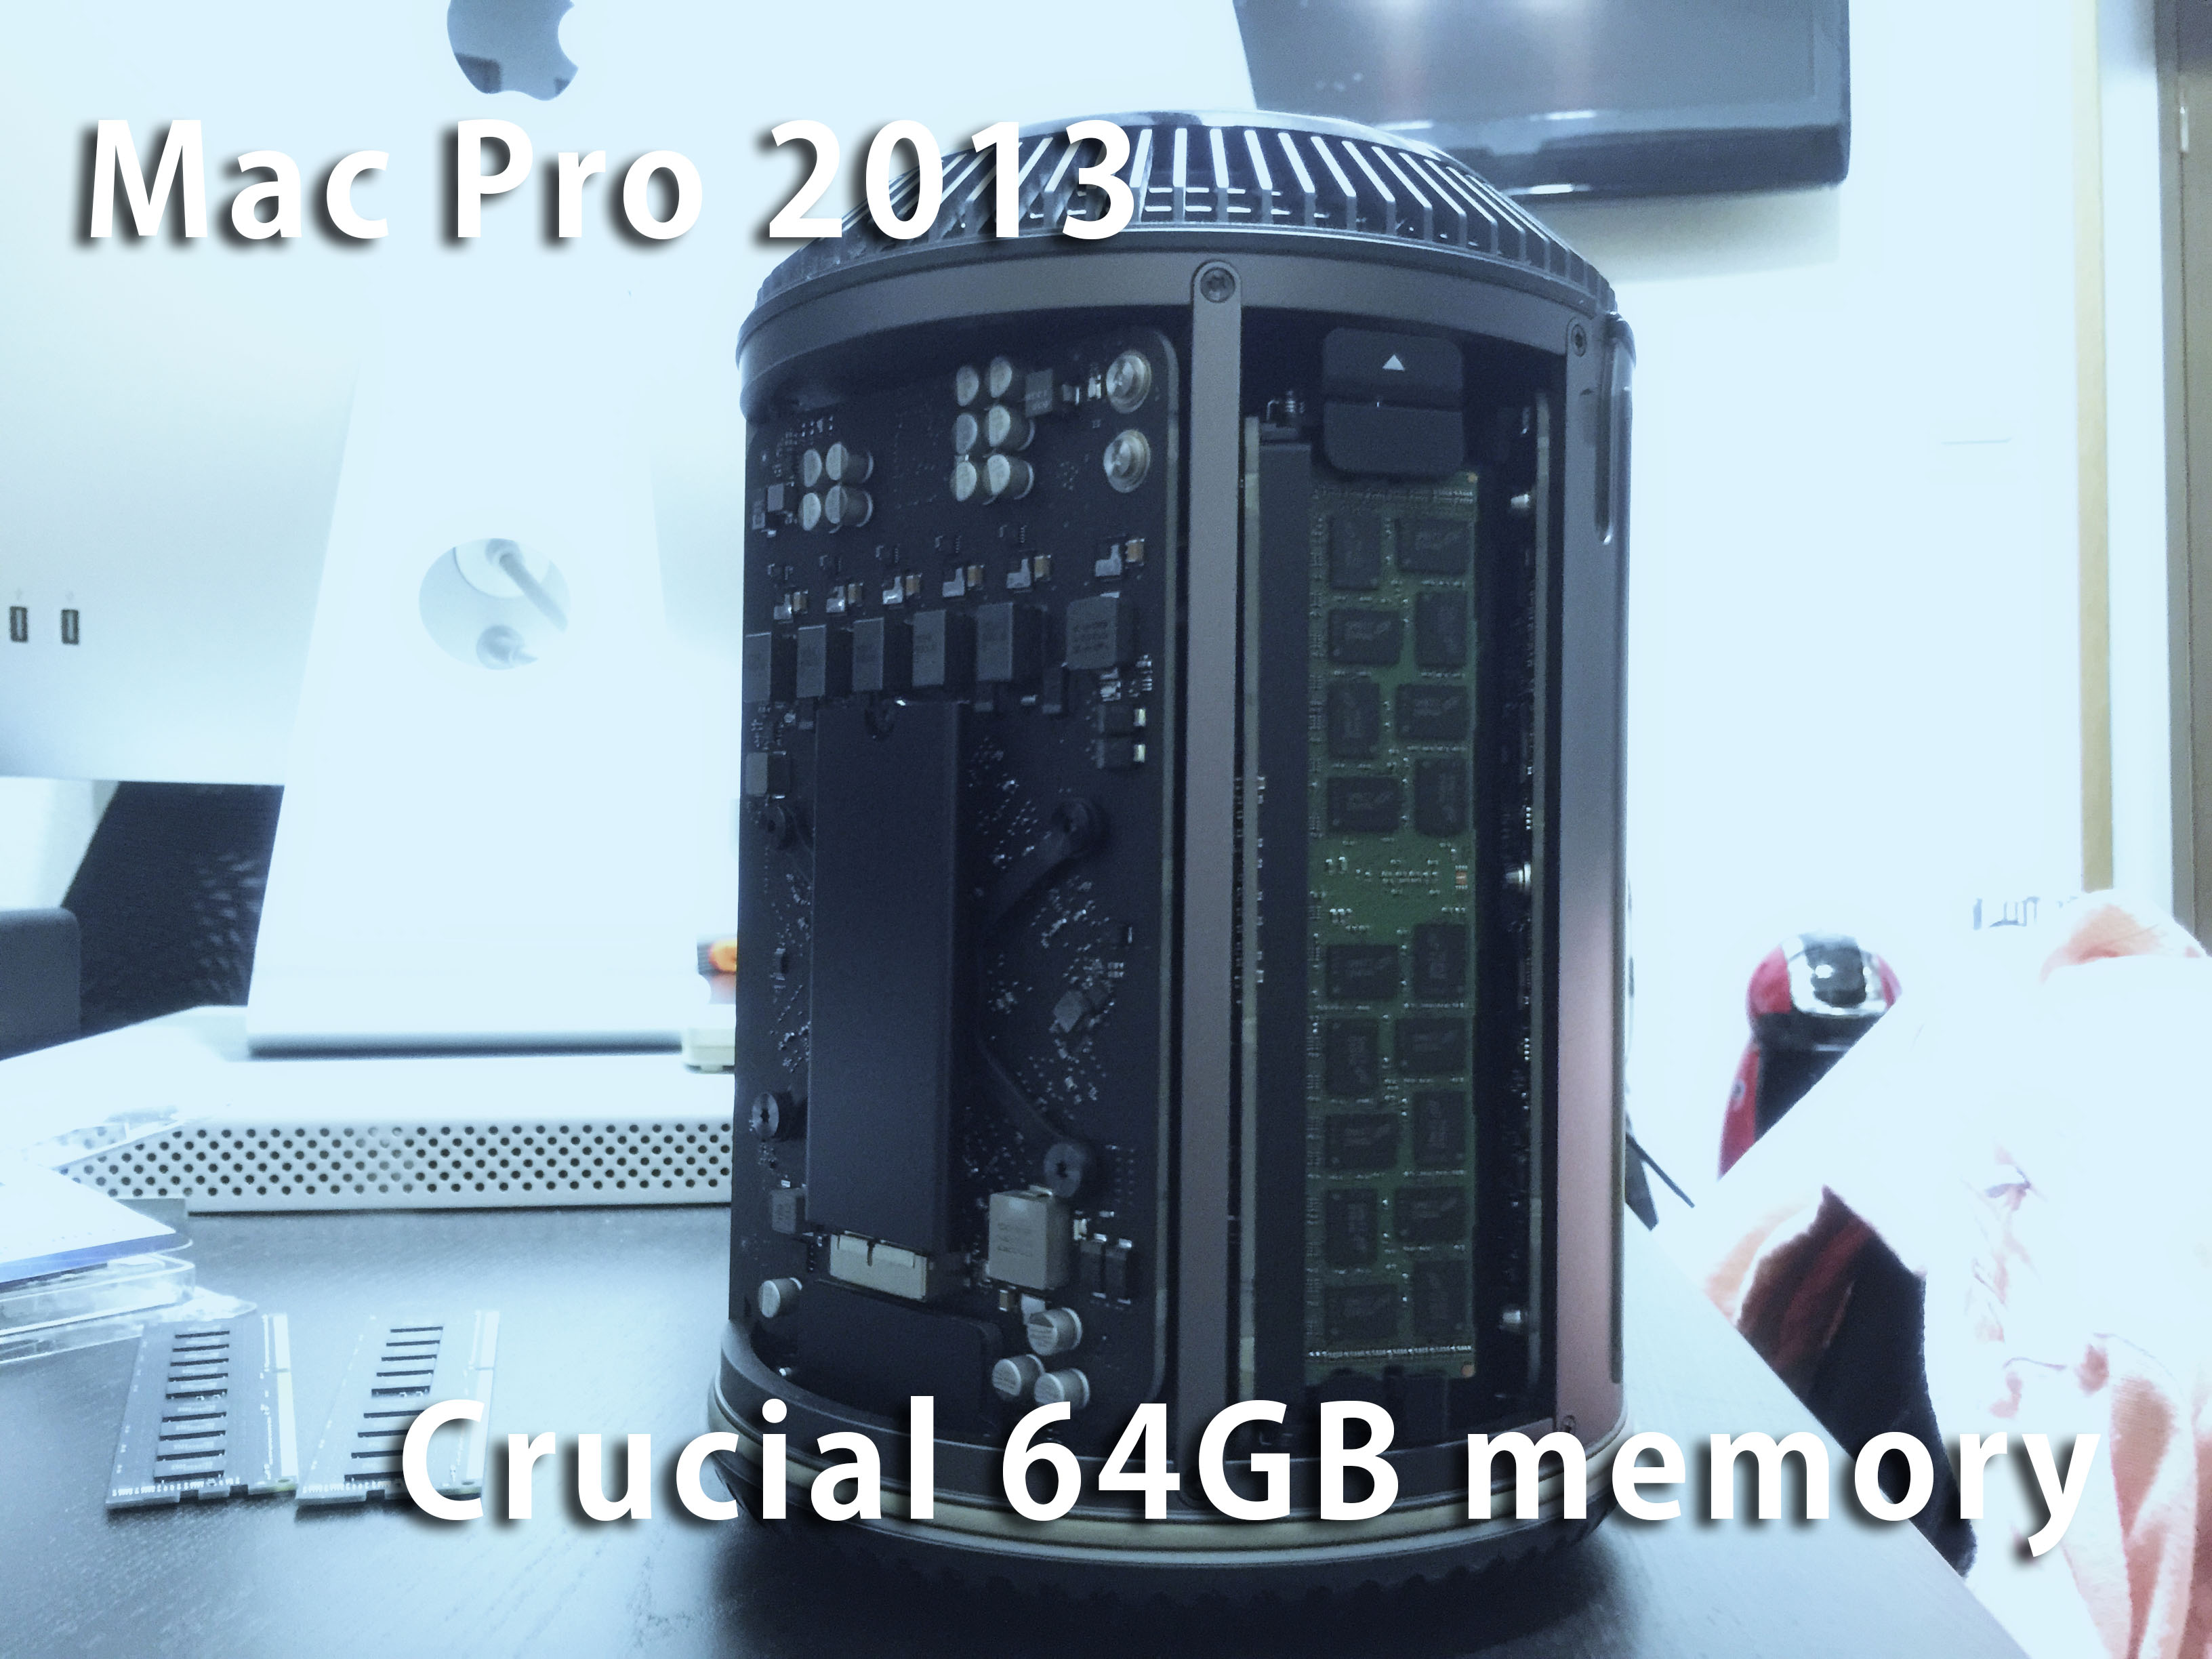 低予算でMac Pro(2013)のメモリを64GBにするならCrucialがオススメ 